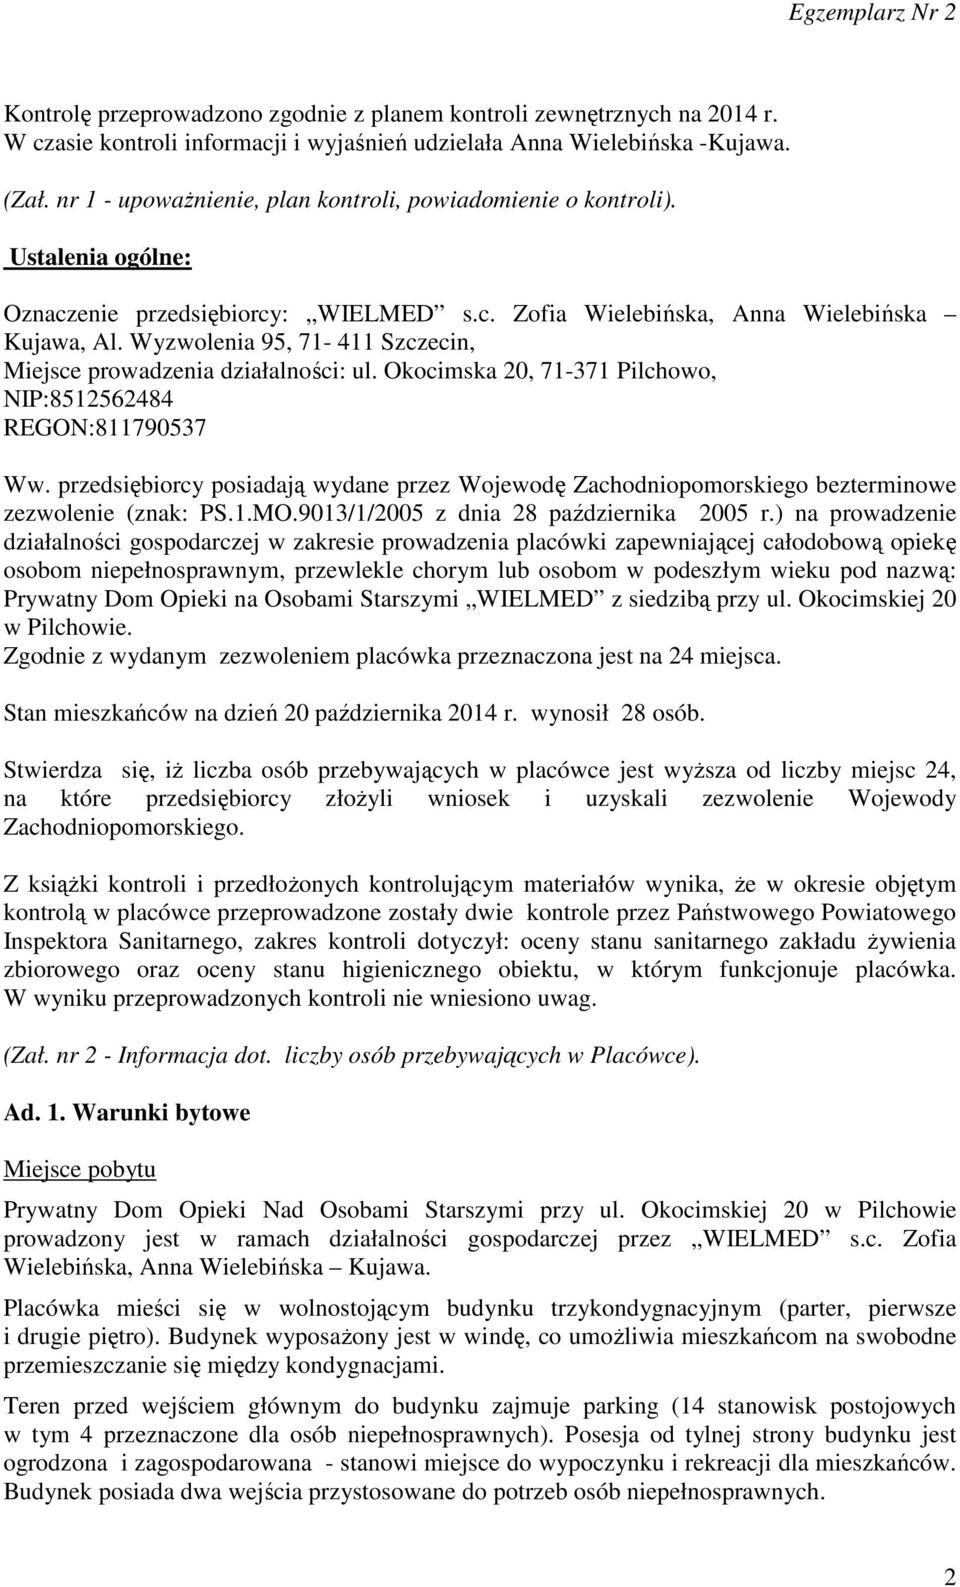 Wyzwolenia 95, 71-411 Szczecin, Miejsce prowadzenia działalności: ul. Okocimska 20, 71-371 Pilchowo, NIP:8512562484 REGON:811790537 Ww.